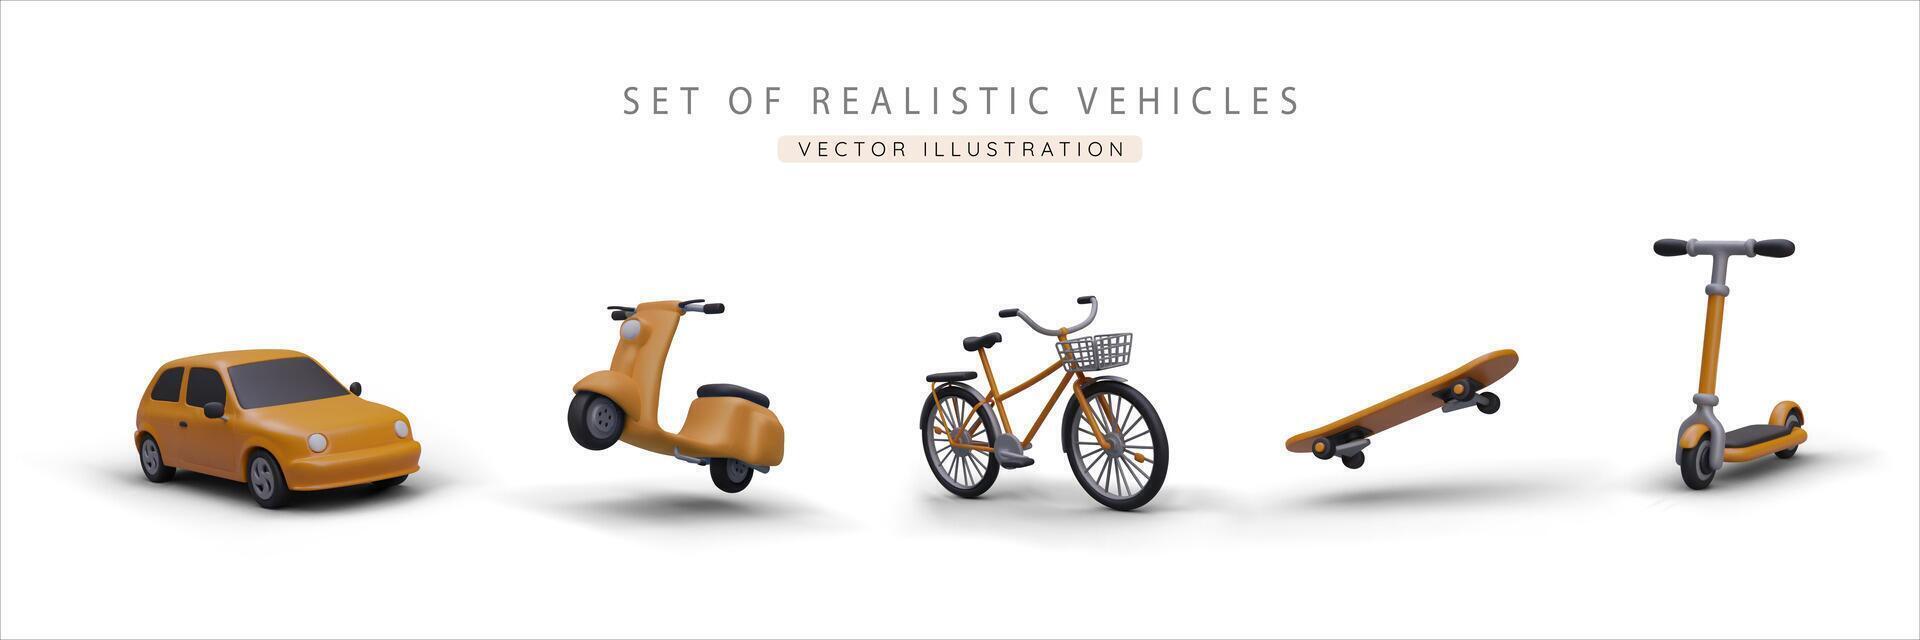 impostato di realistico 3d giallo macchina, scooter, bicicletta, skateboard e calcio scooter vettore